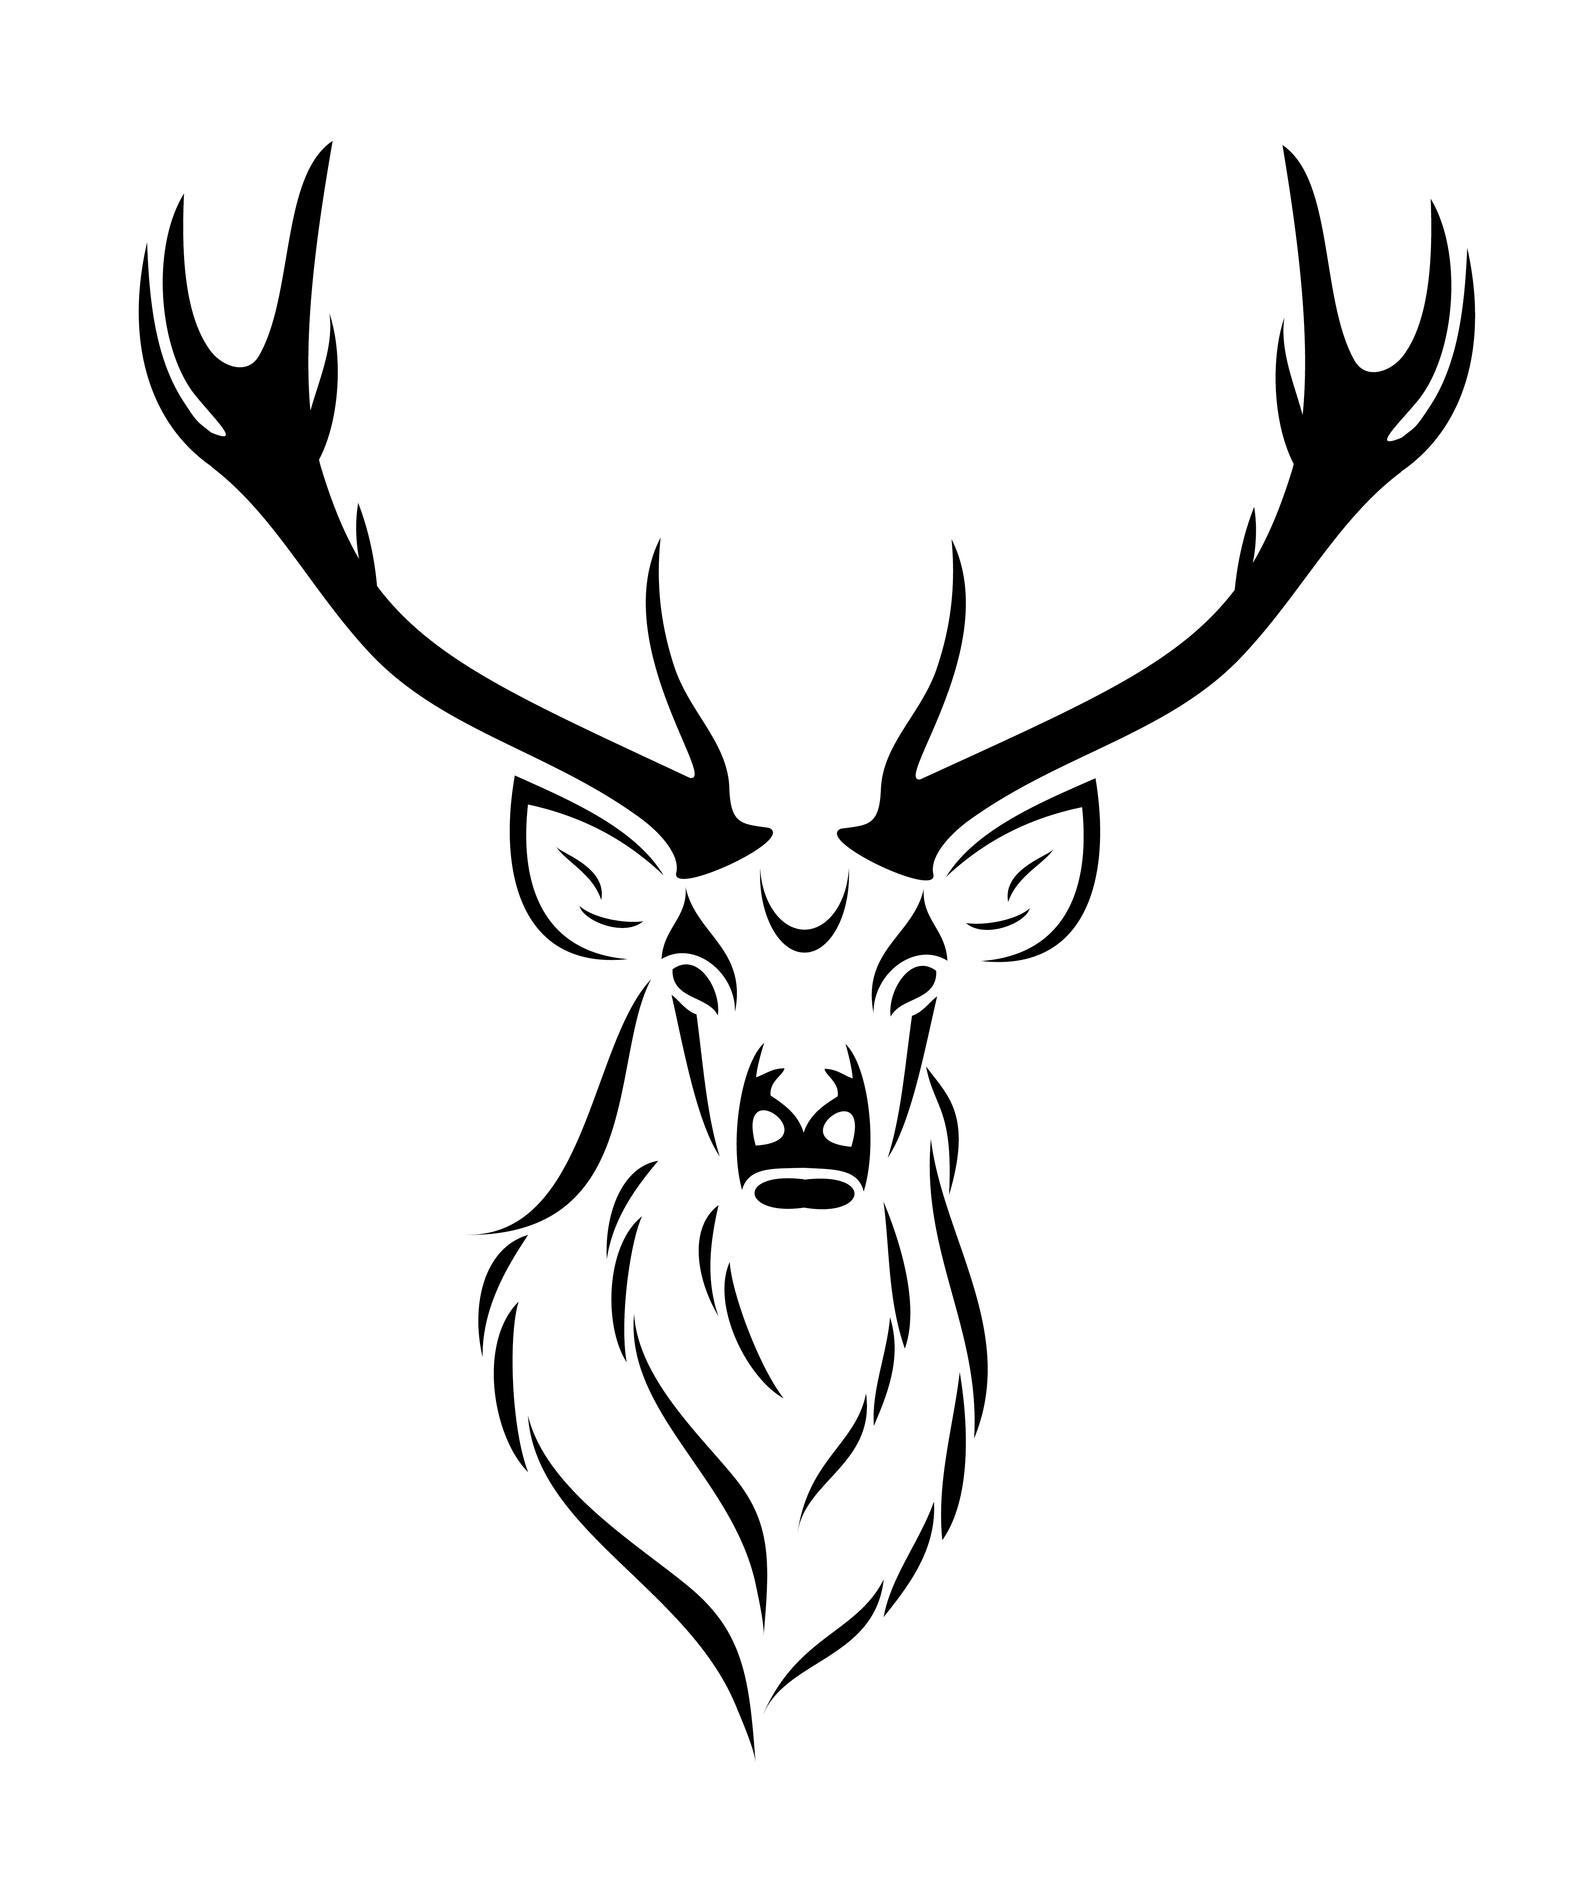 Details more than 83 mule deer skull tattoo - in.eteachers